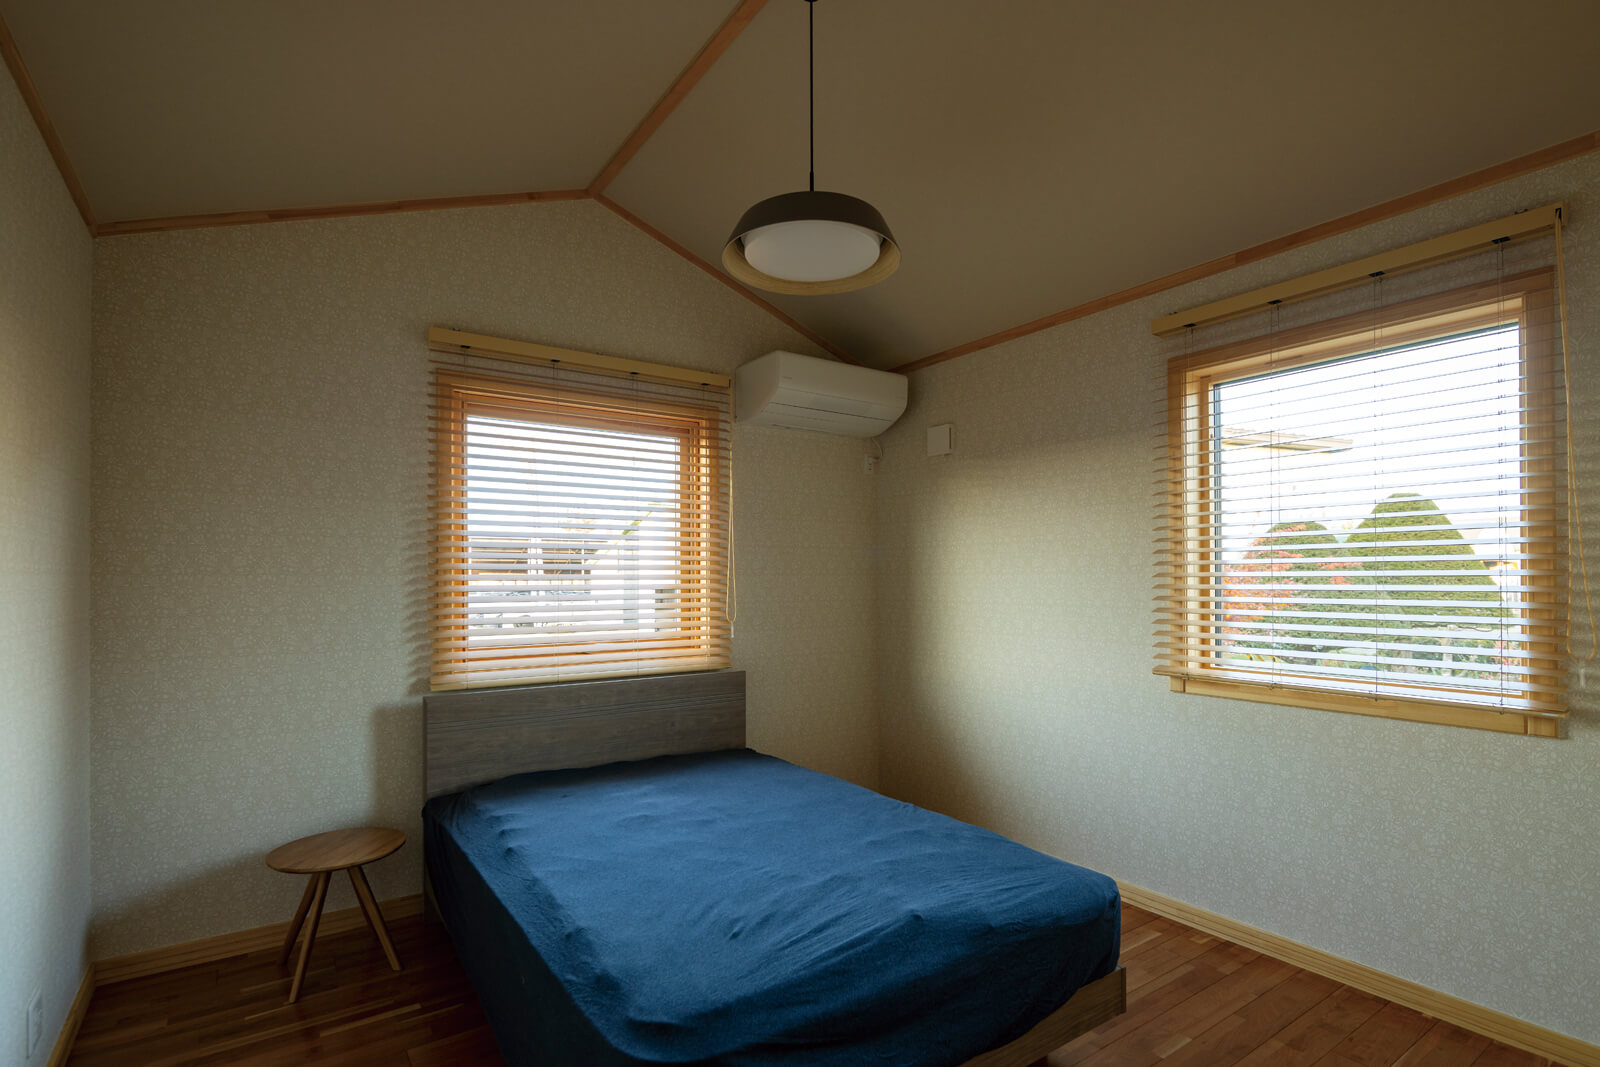 屋根なり天井と2面採光で明るい雰囲気に仕上げた寝室。大型のウォークインクローゼットも備え、空間をいつでもすっきりと保てる